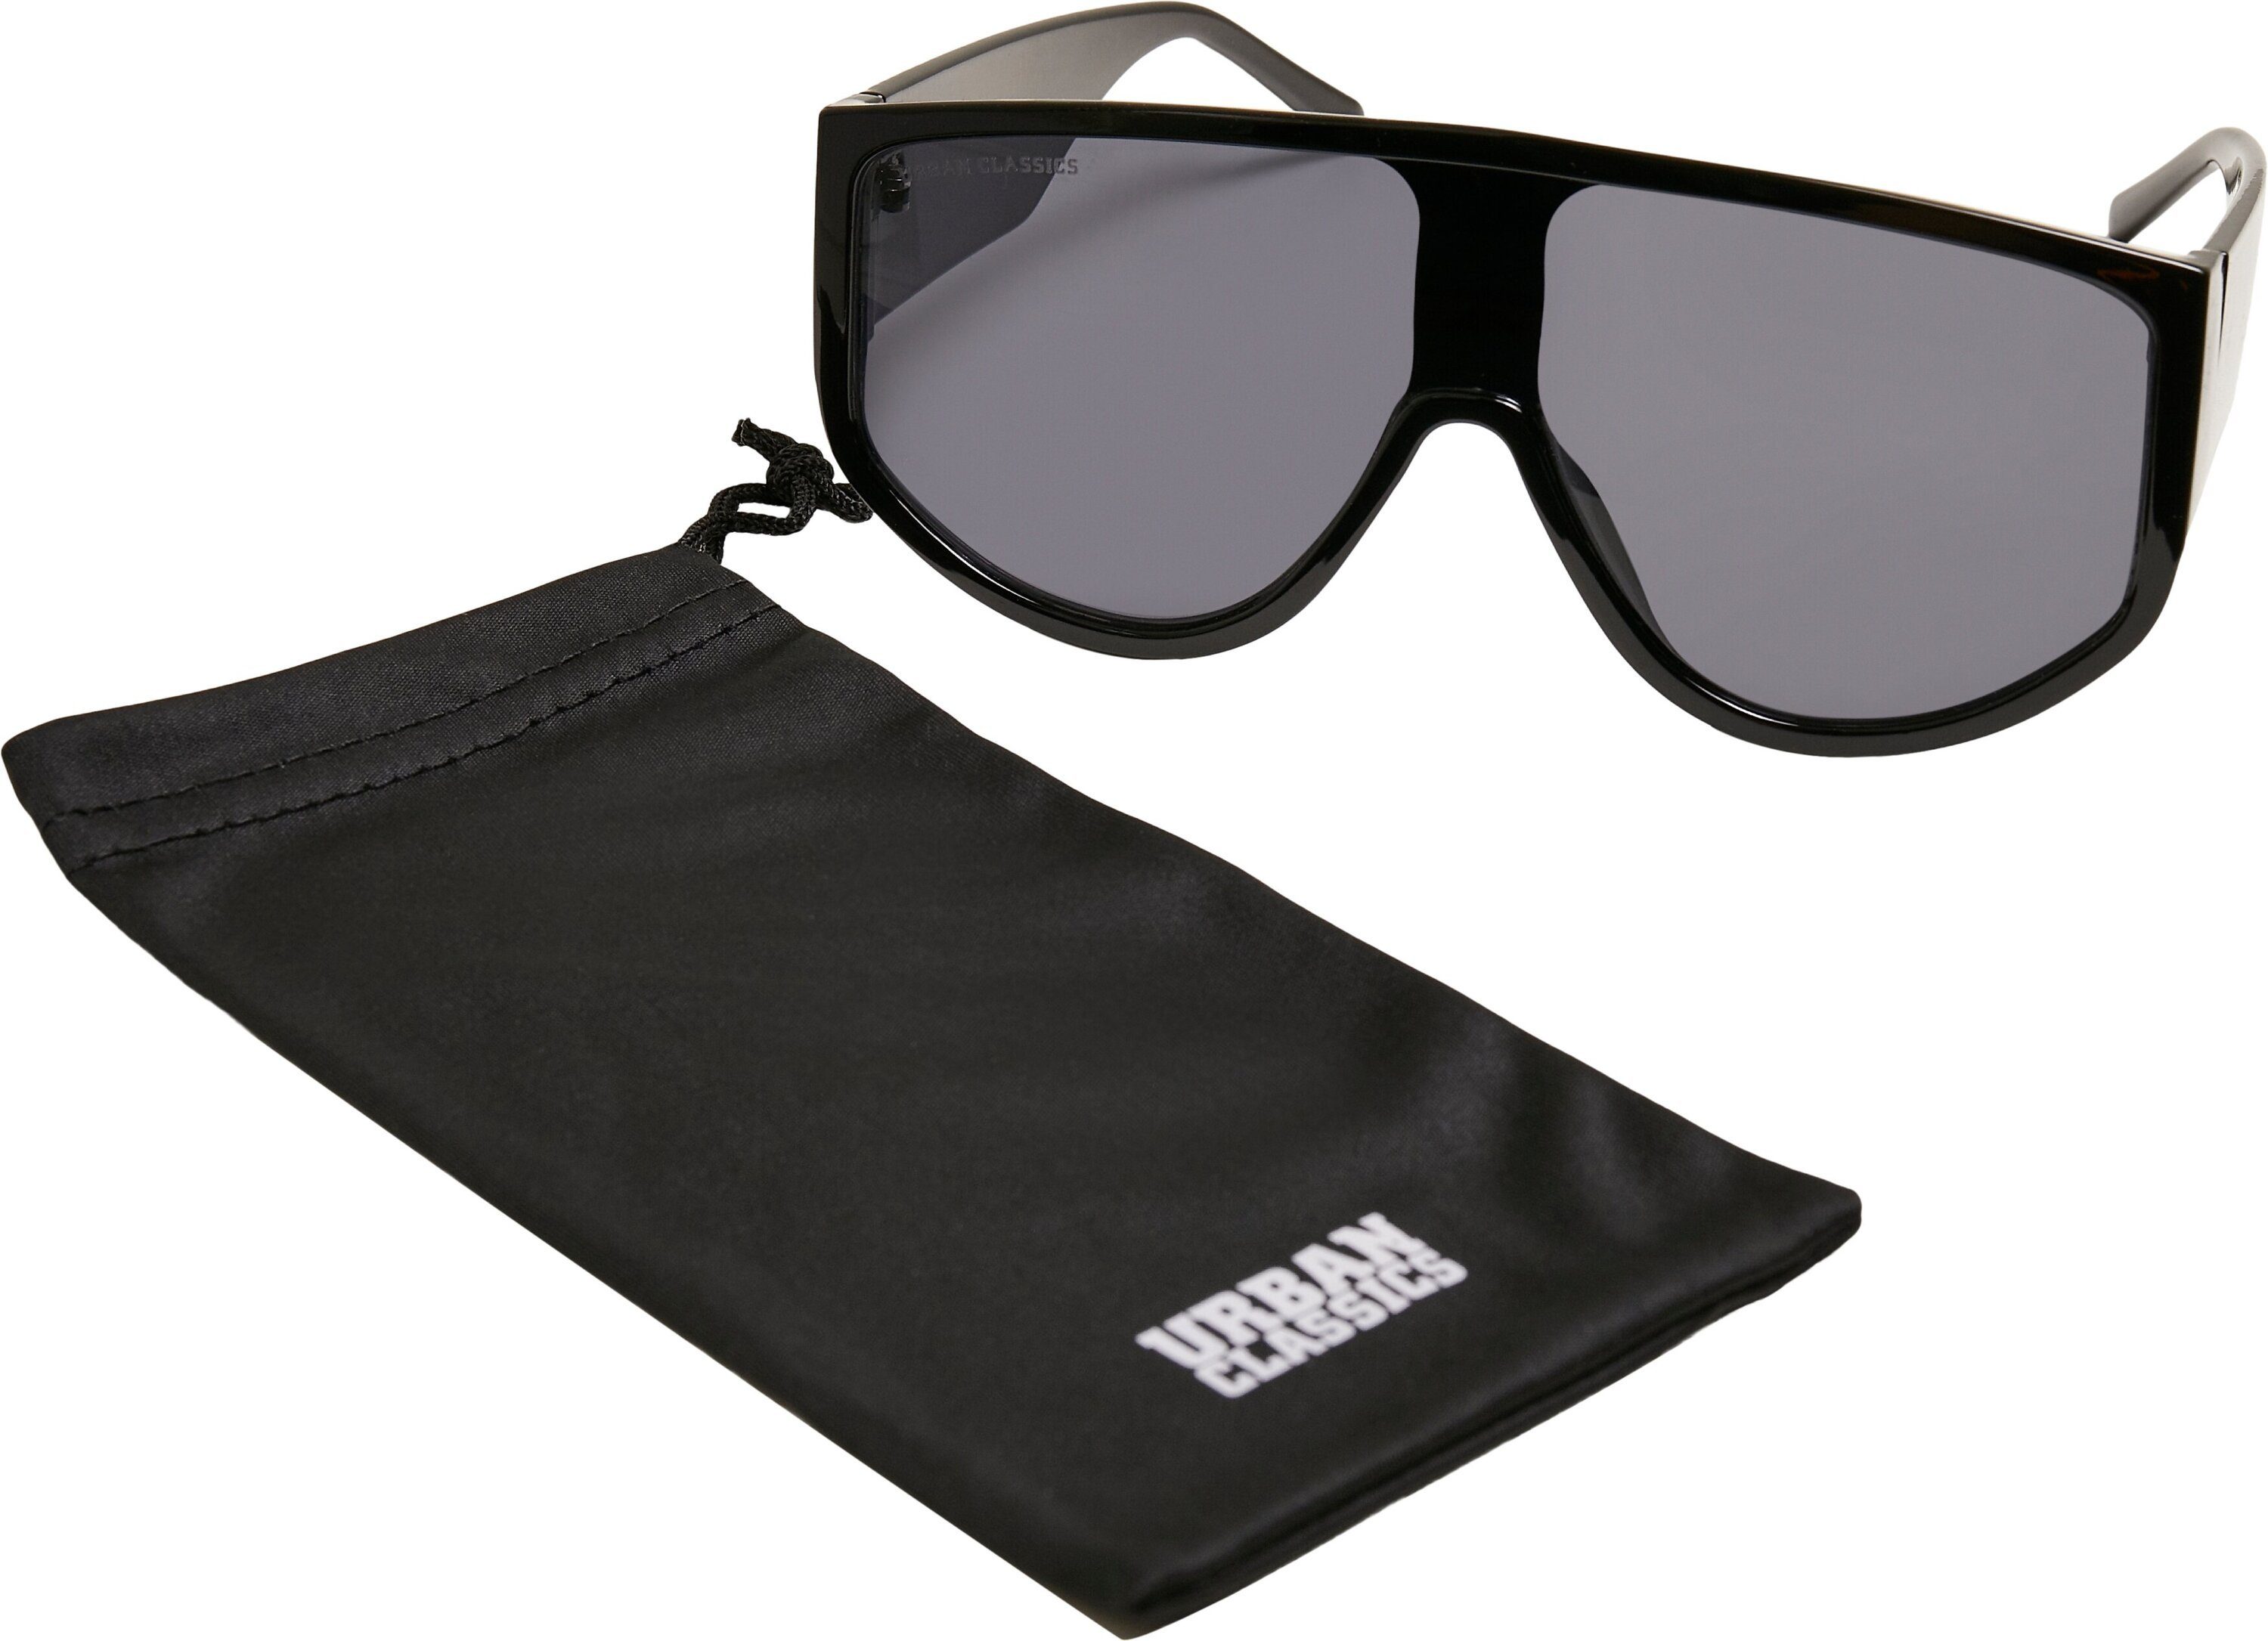 Unisex Sunglasses Florida Sonnenbrille CLASSICS URBAN